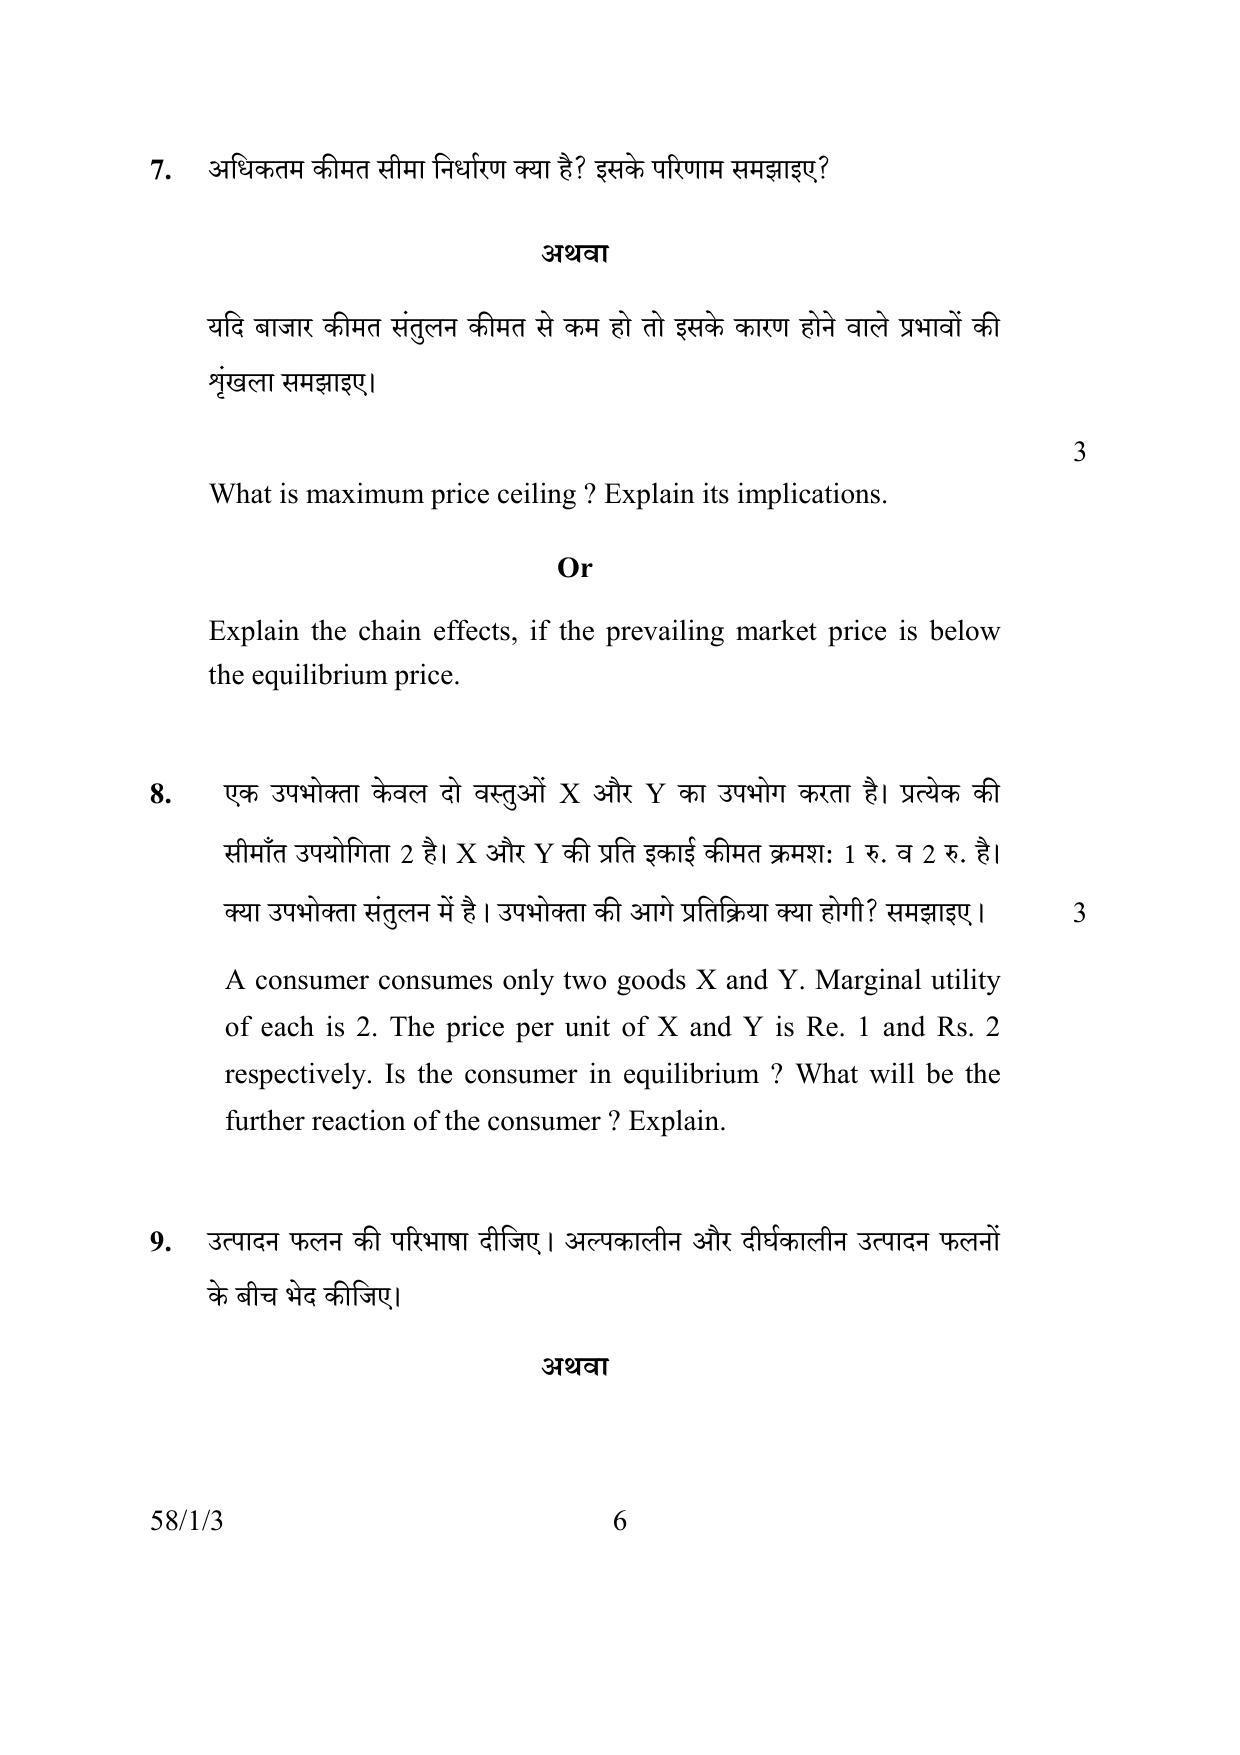 CBSE Class 12 58-1-3 ECONOMICS 2016 Question Paper - Page 6